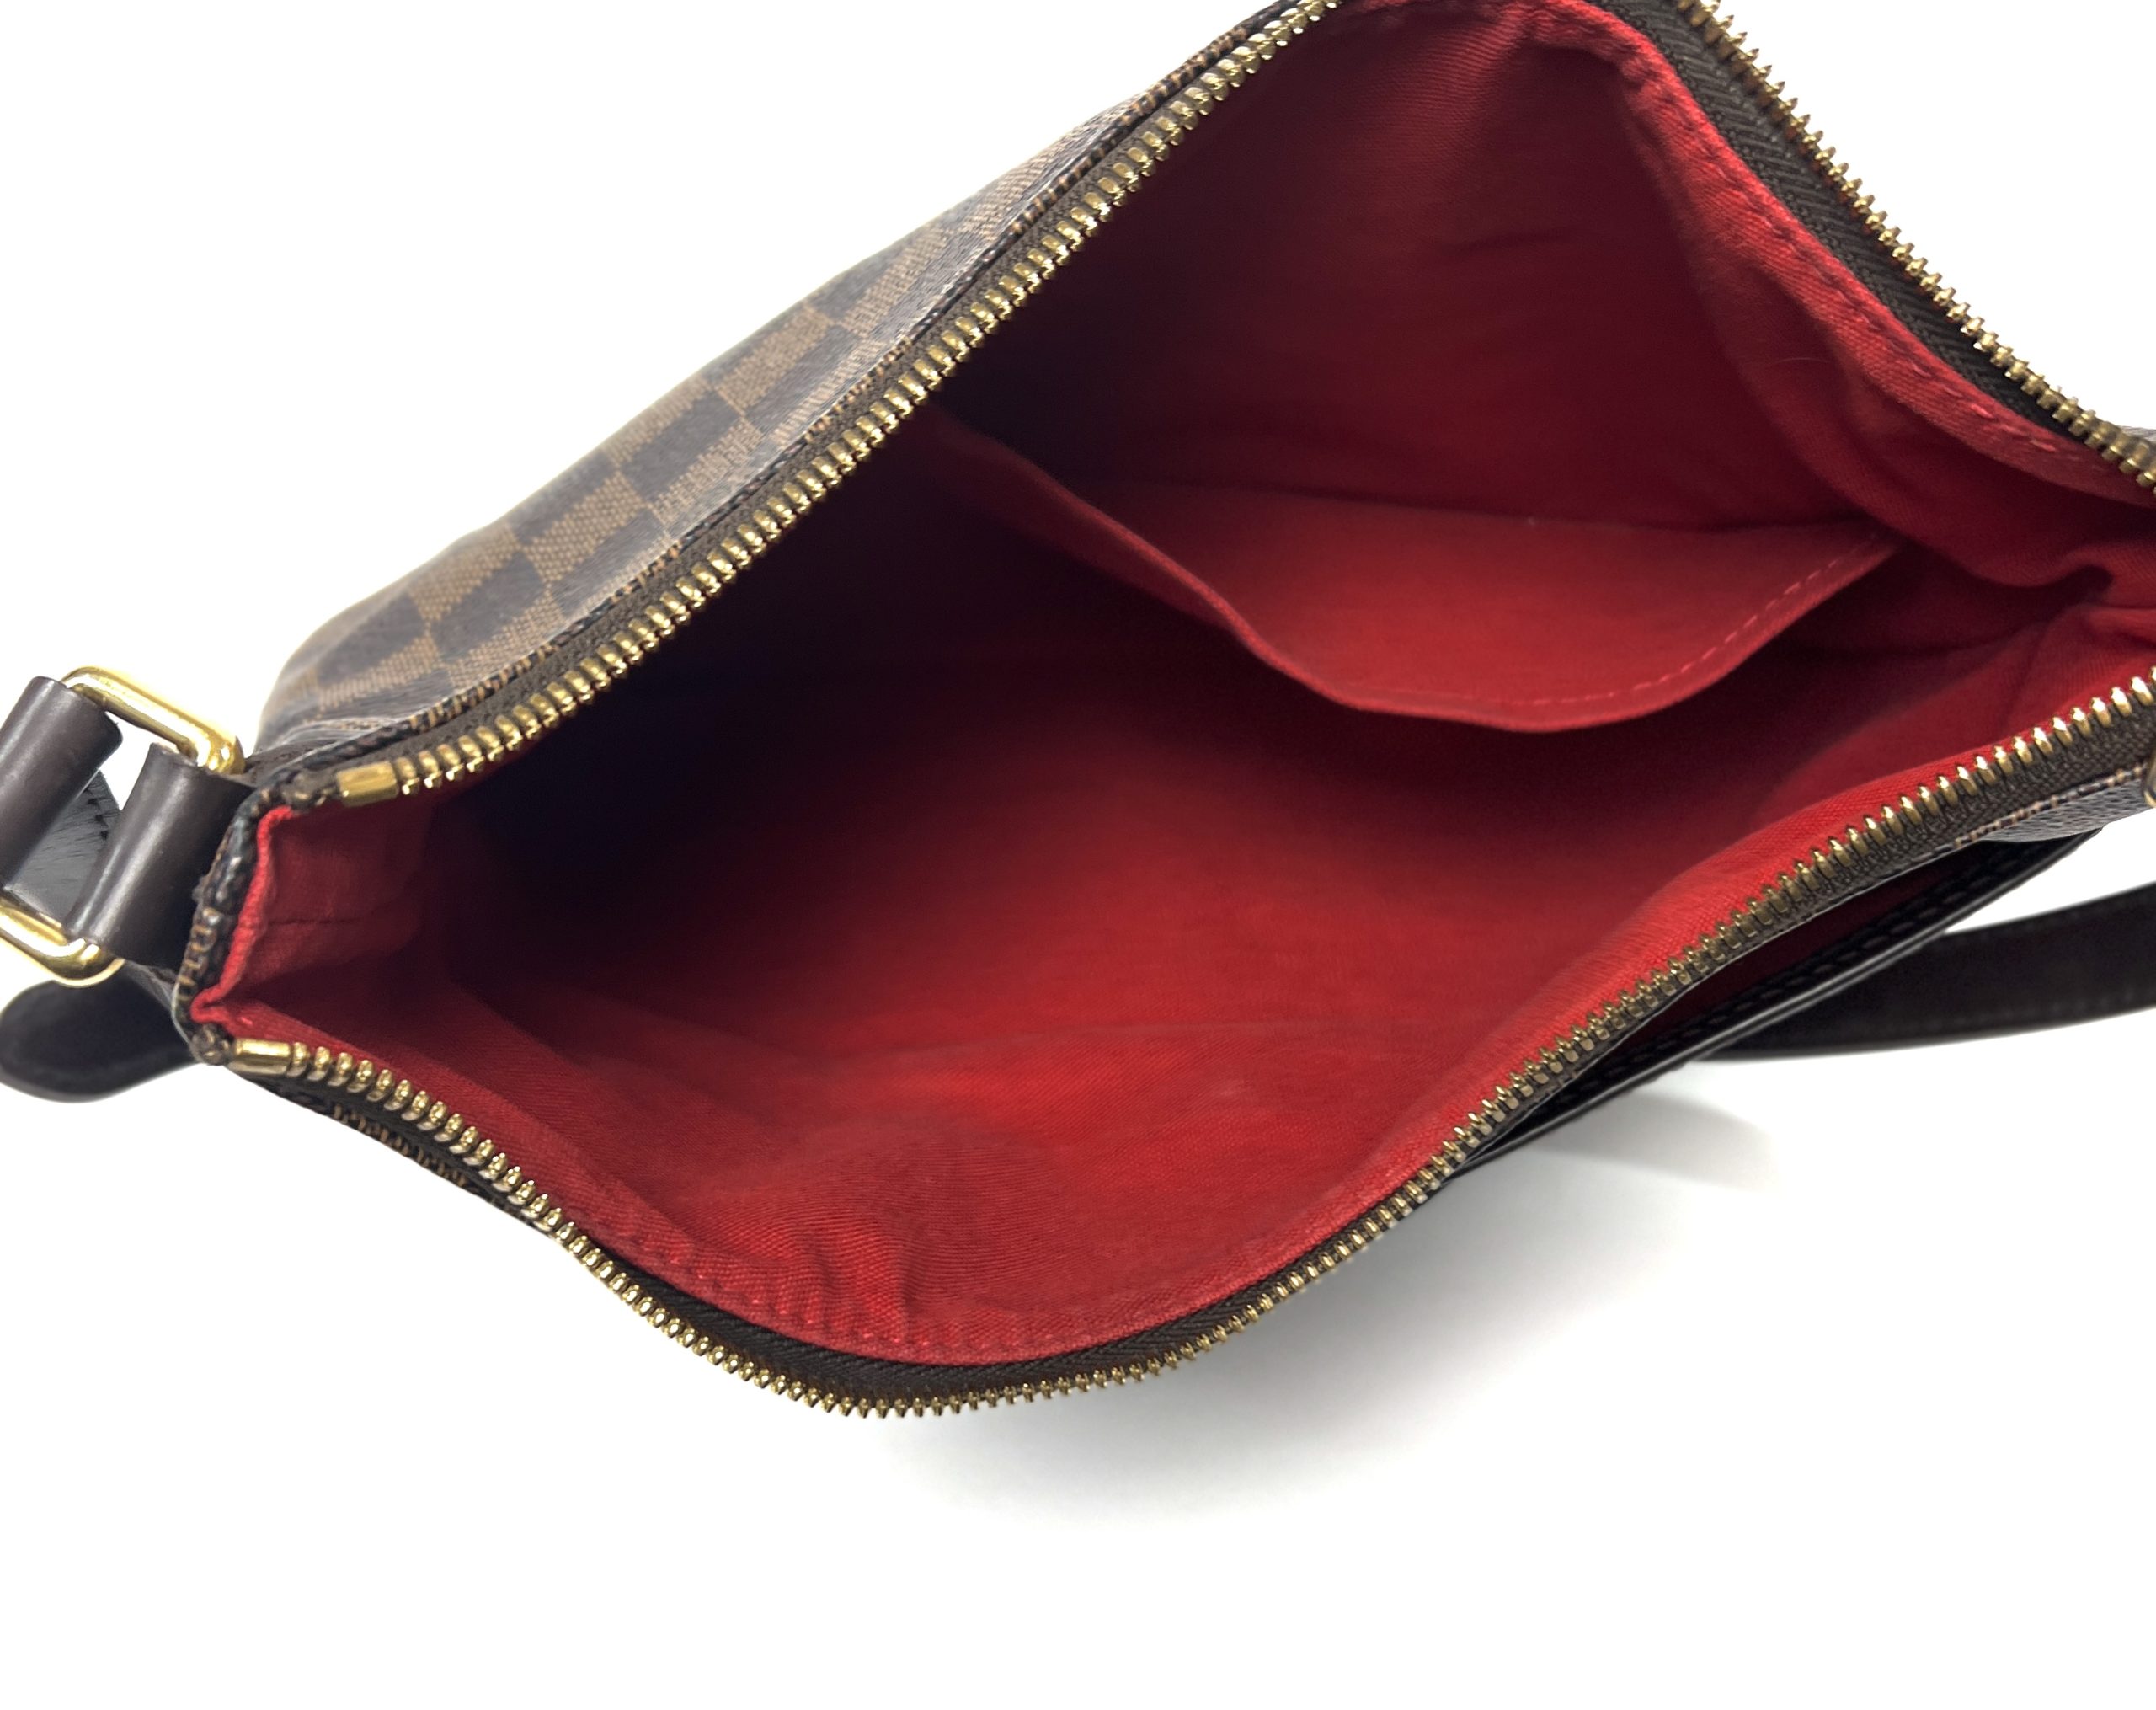 Louis Vuitton - LV - Damier Ebene Pouch Medium Wristlet Clutch Red Interior